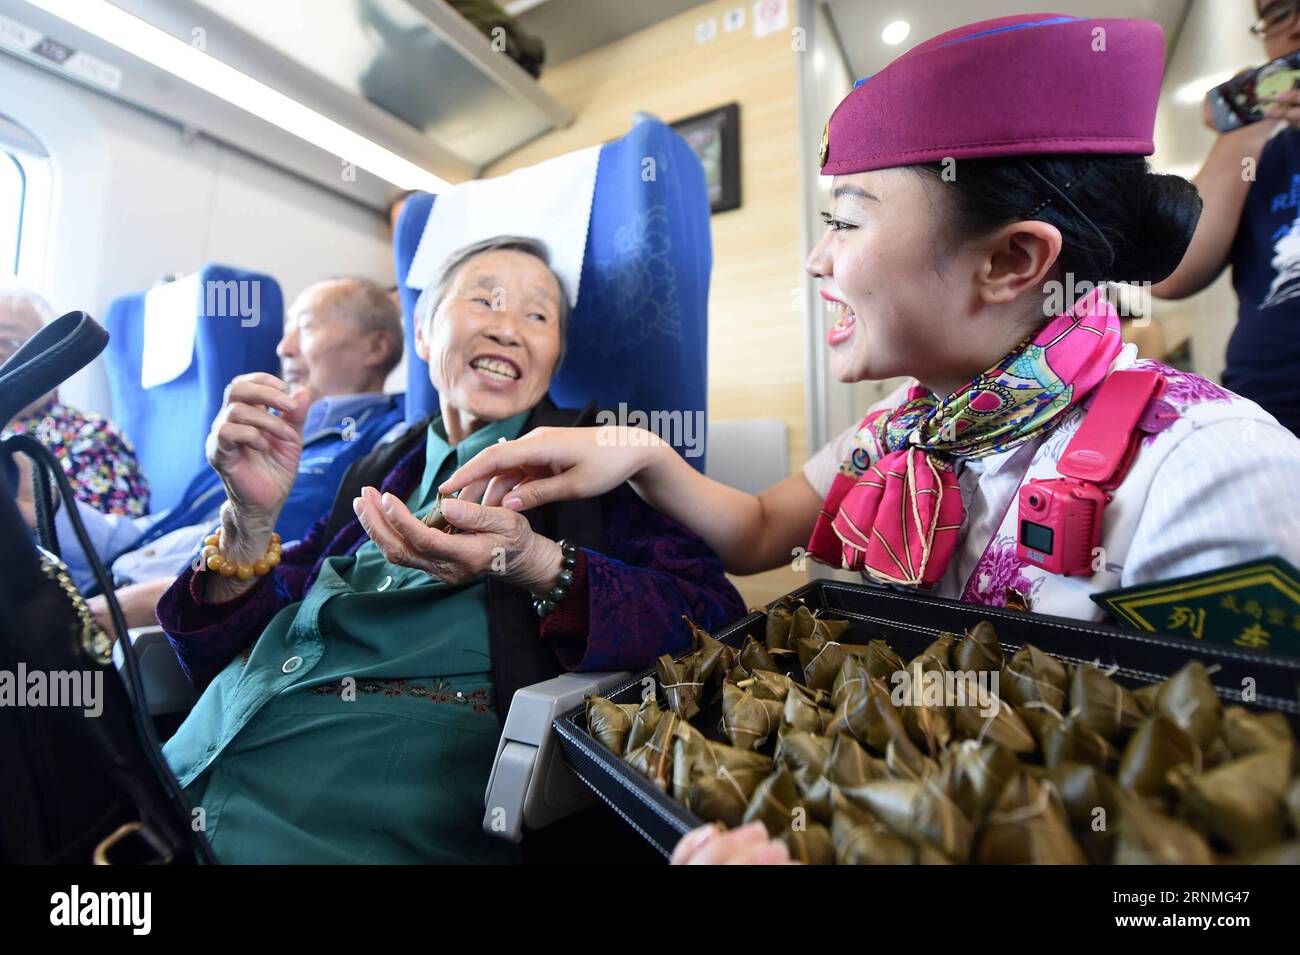 (170527) -- CHONGQING, 27. Mai 2017 -- Eine Stewardess serviert die zongzi, pyramidenförmige Knödel aus klebrigem Reis, umwickelt mit Bambus- oder Schilfblättern, für Passagiere in einem Hochgeschwindigkeitszug zwischen Chongqing und Chengdu im Südwesten Chinas, 27. Mai 2017. Zwischen Chengdu und Chongqing fand eine Party in mehreren Zügen statt, um das bevorstehende traditionelle Duanwu Festival oder das Dragon Boat Festival zu feiern, das am 30. Mai dieses Jahres stattfindet. (zhs) CHINA-CHONGQING-RAILWAY-DUANWU FESTIVAL (CN) TangxYi PUBLICATIONxNOTxINxCHN Chongqing Mai 27 2017 eine Stewardess dient der Zongzi Pyramid Shape Stockfoto